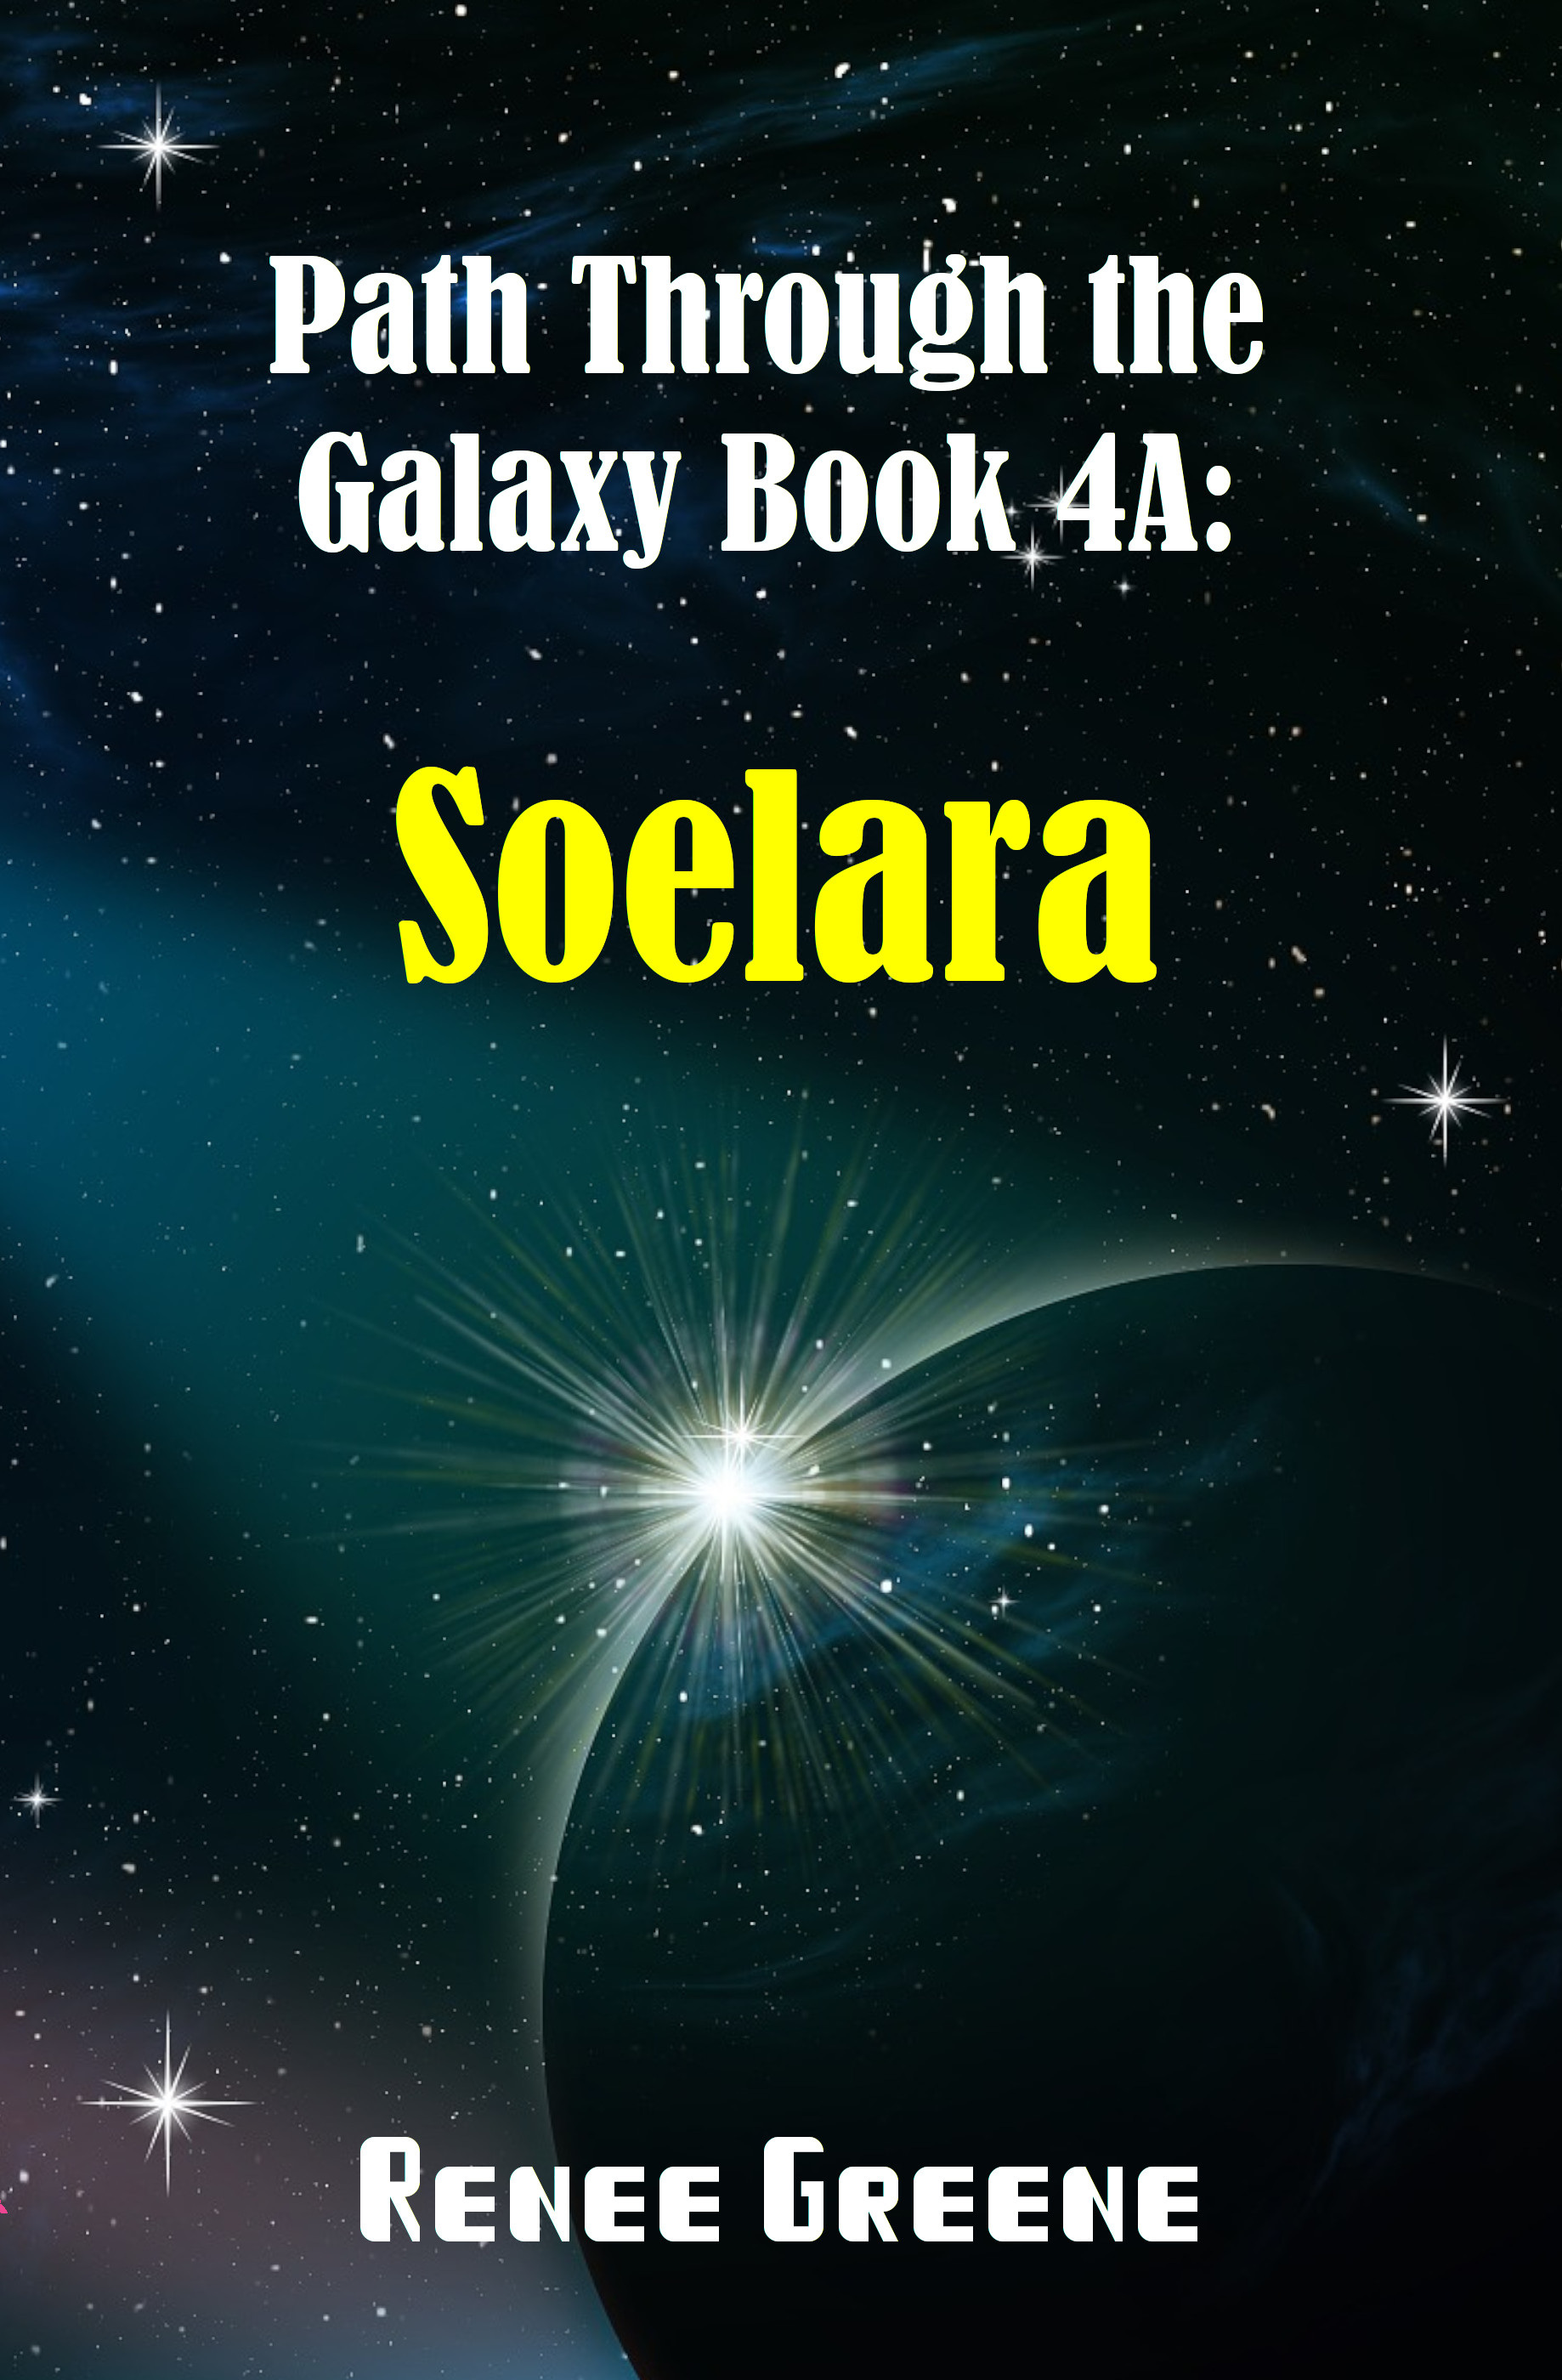 Path Through the Galaxy Book 4A: Soelara